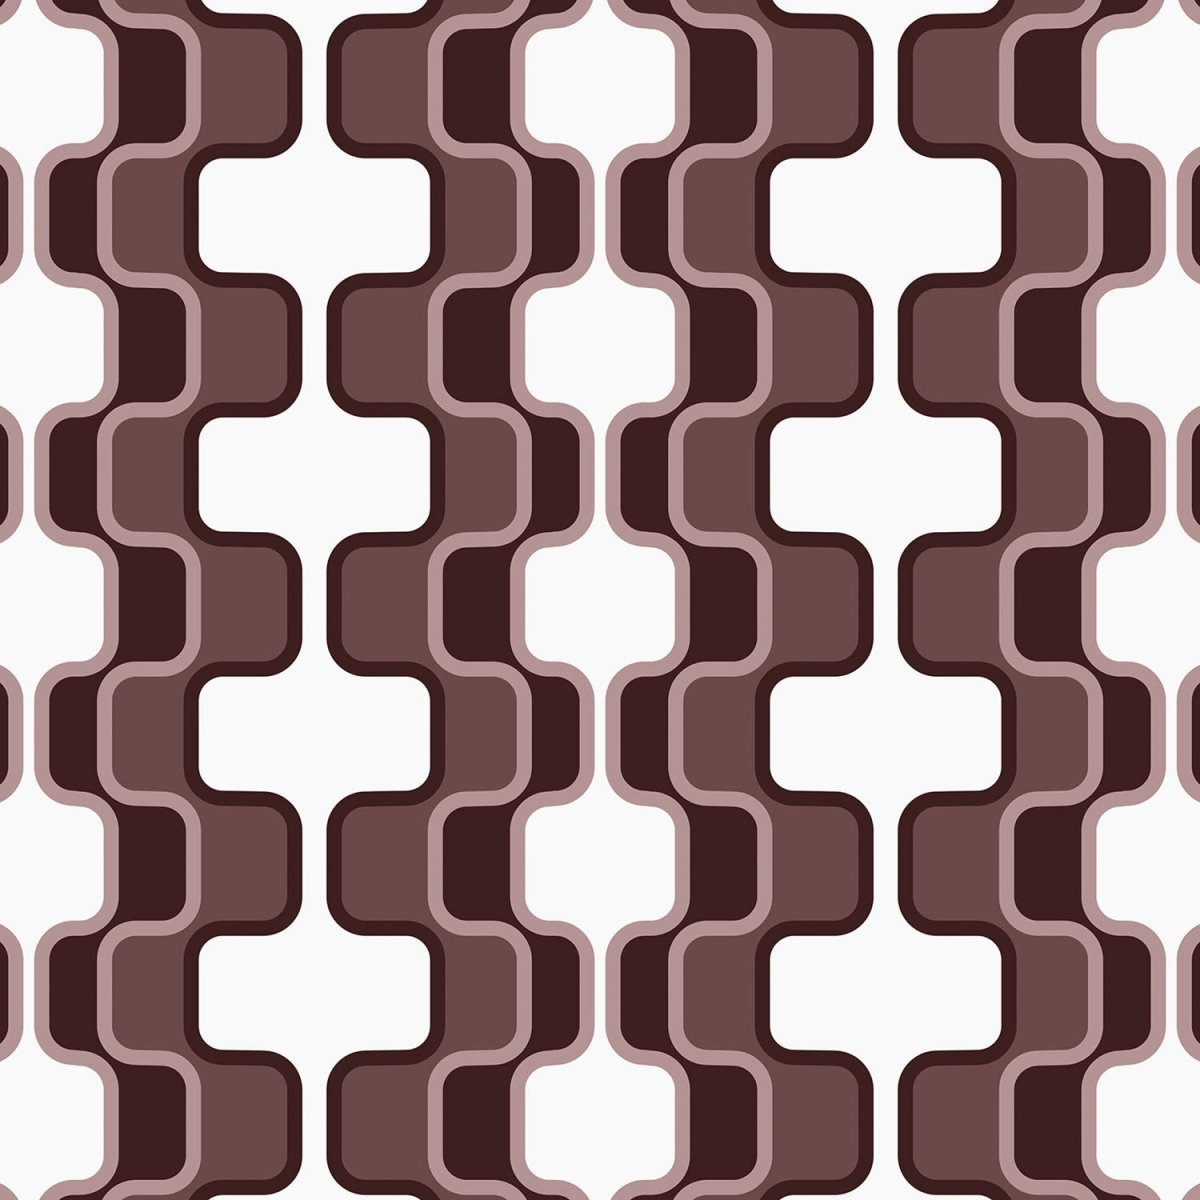 Beistelltisch Retromuster Coffee Muster M0113 entdecken - Bild 2